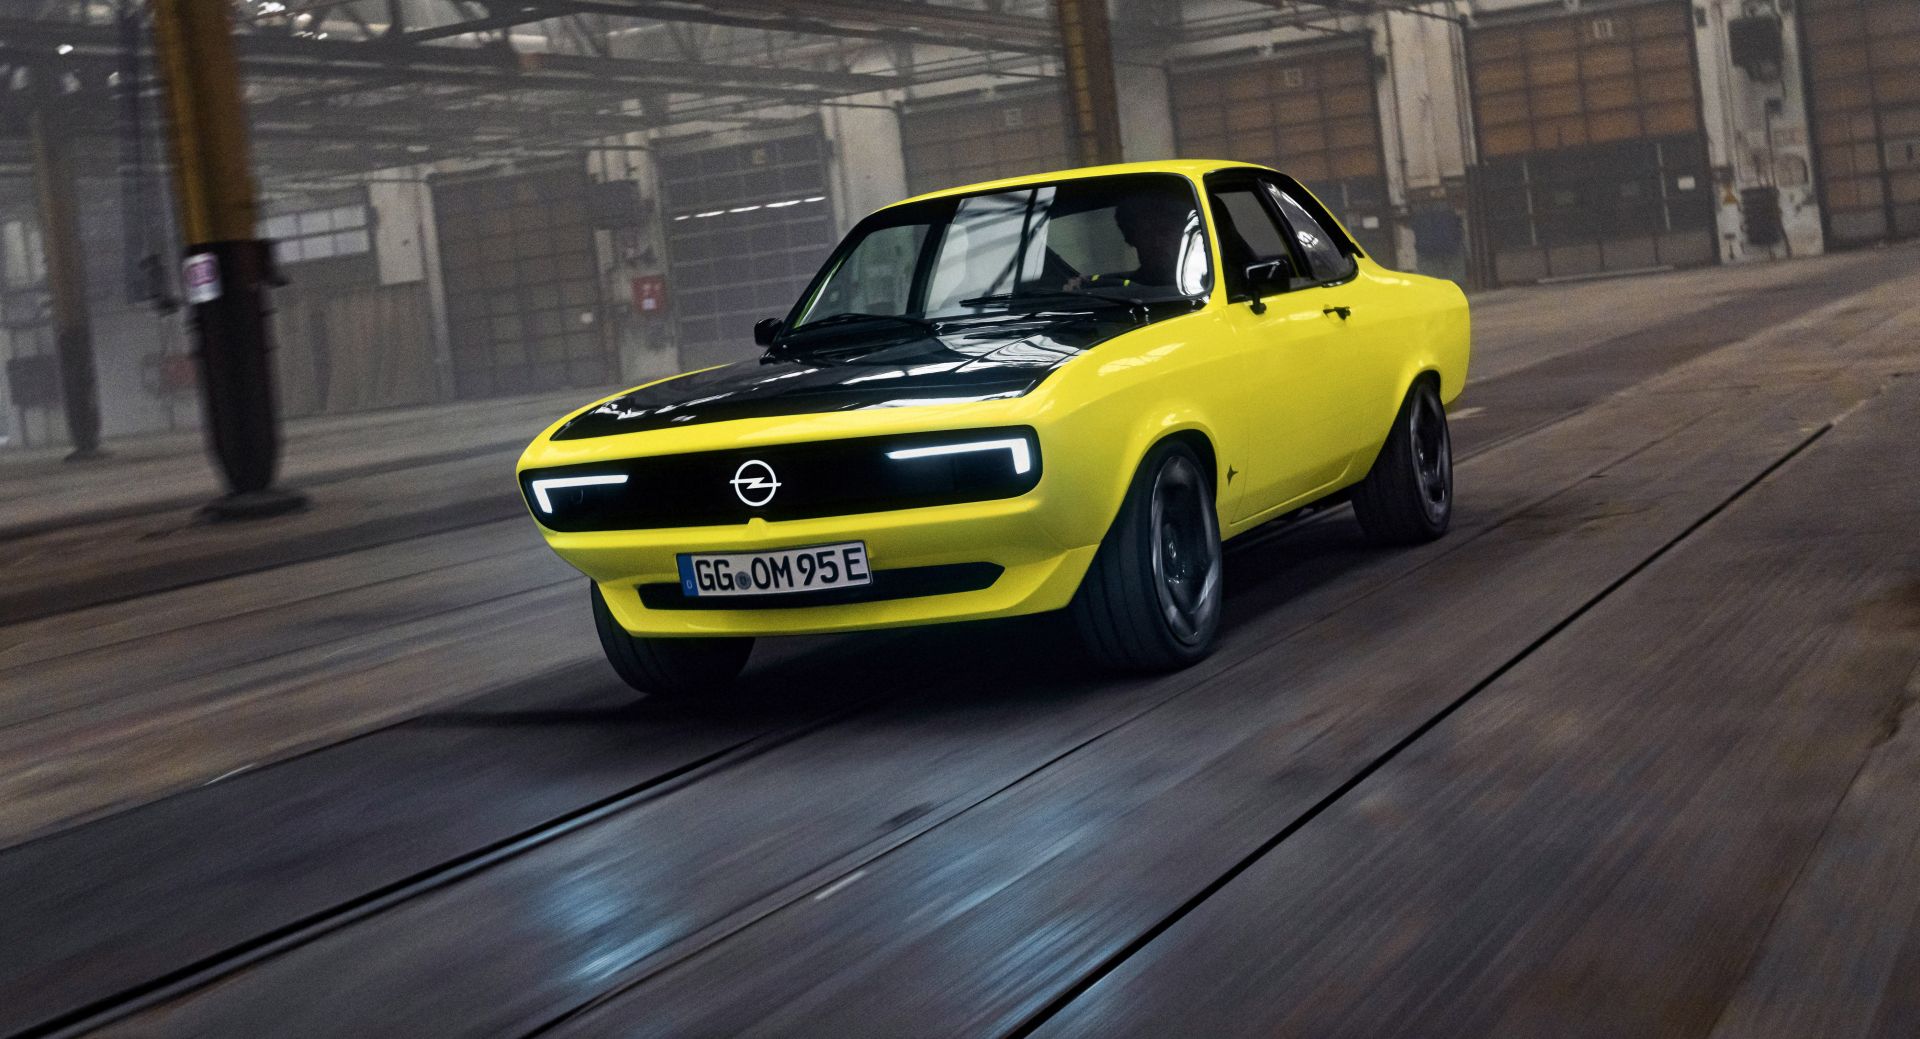 Povijest i budućnost u jednom: Opel Manta GSe ElektroMOD Coupe kombinira retro izgled i električni motor